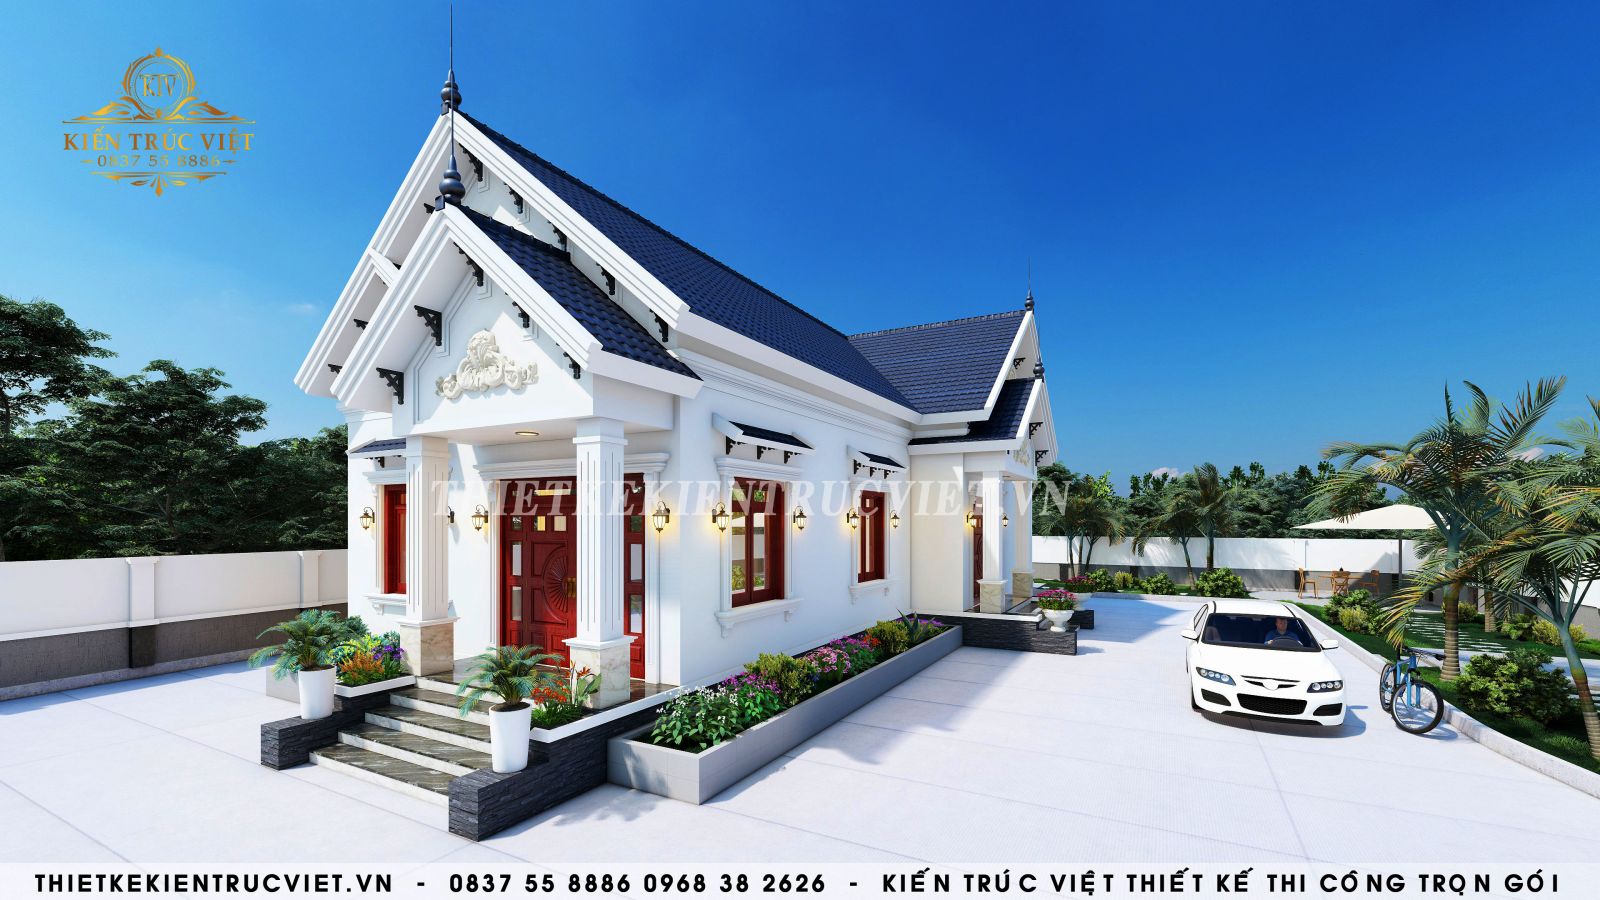 Mẫu nhà mái thái 1 tầng, nhà đẹp hiện đại tại Quảng Ninh BT1T53